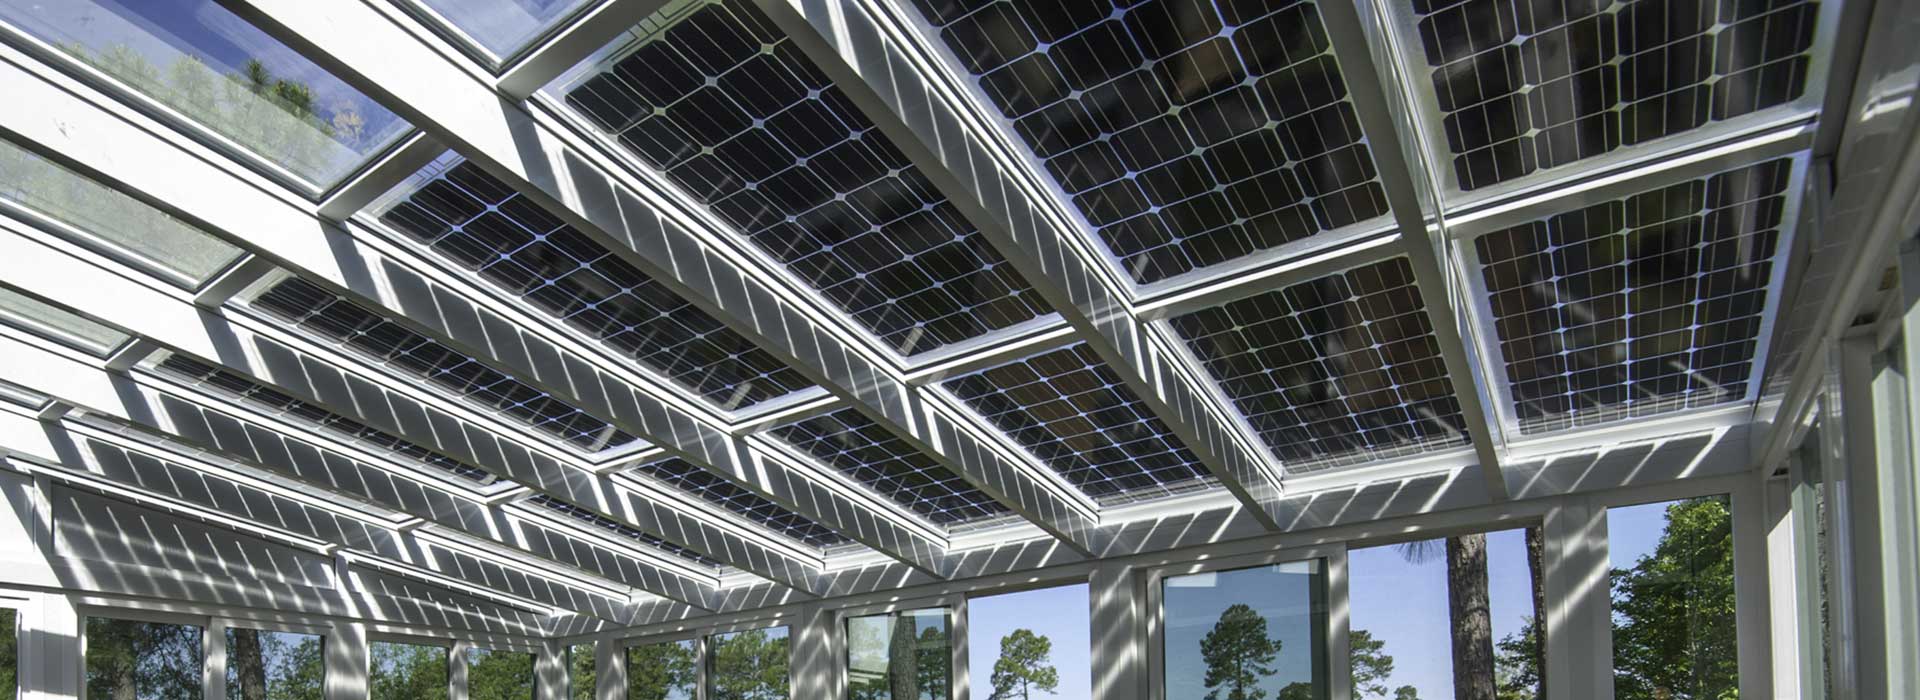 Aluminiumüberdachung mit Photovoltaikmodulen